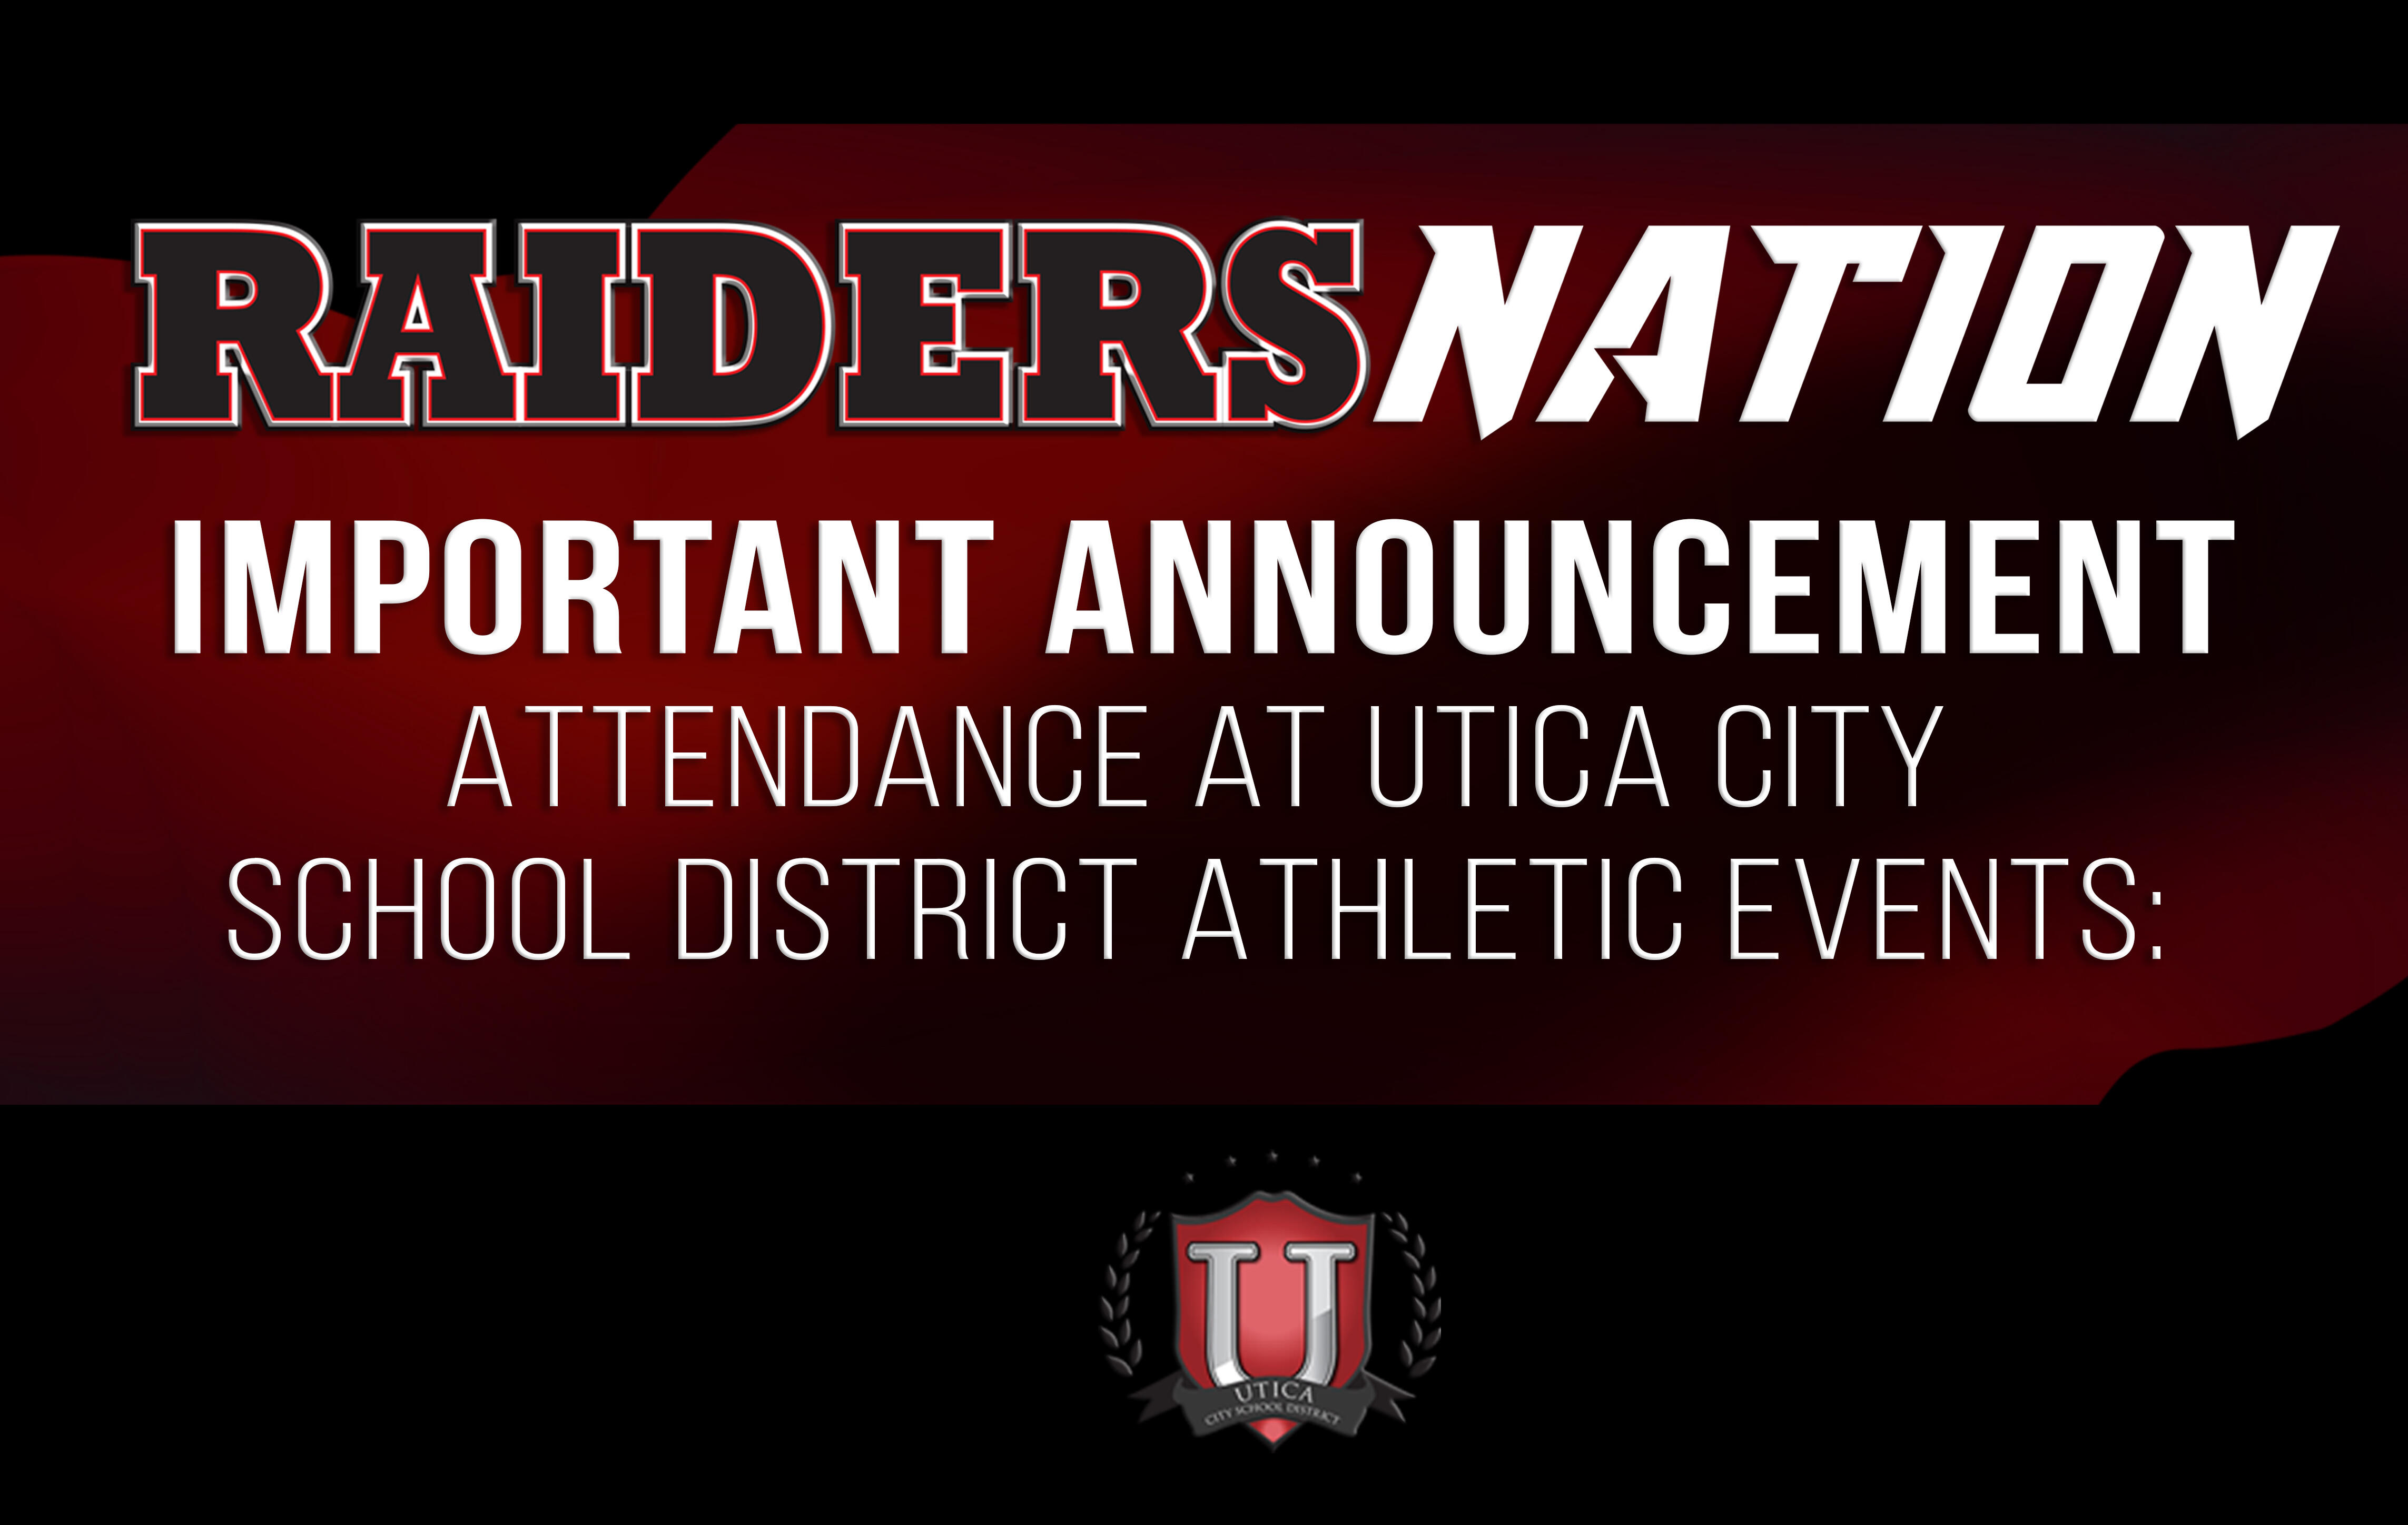 اطلاعیه مهم - حضور در رویدادهای ورزشی منطقه مدرسه شهر Utica